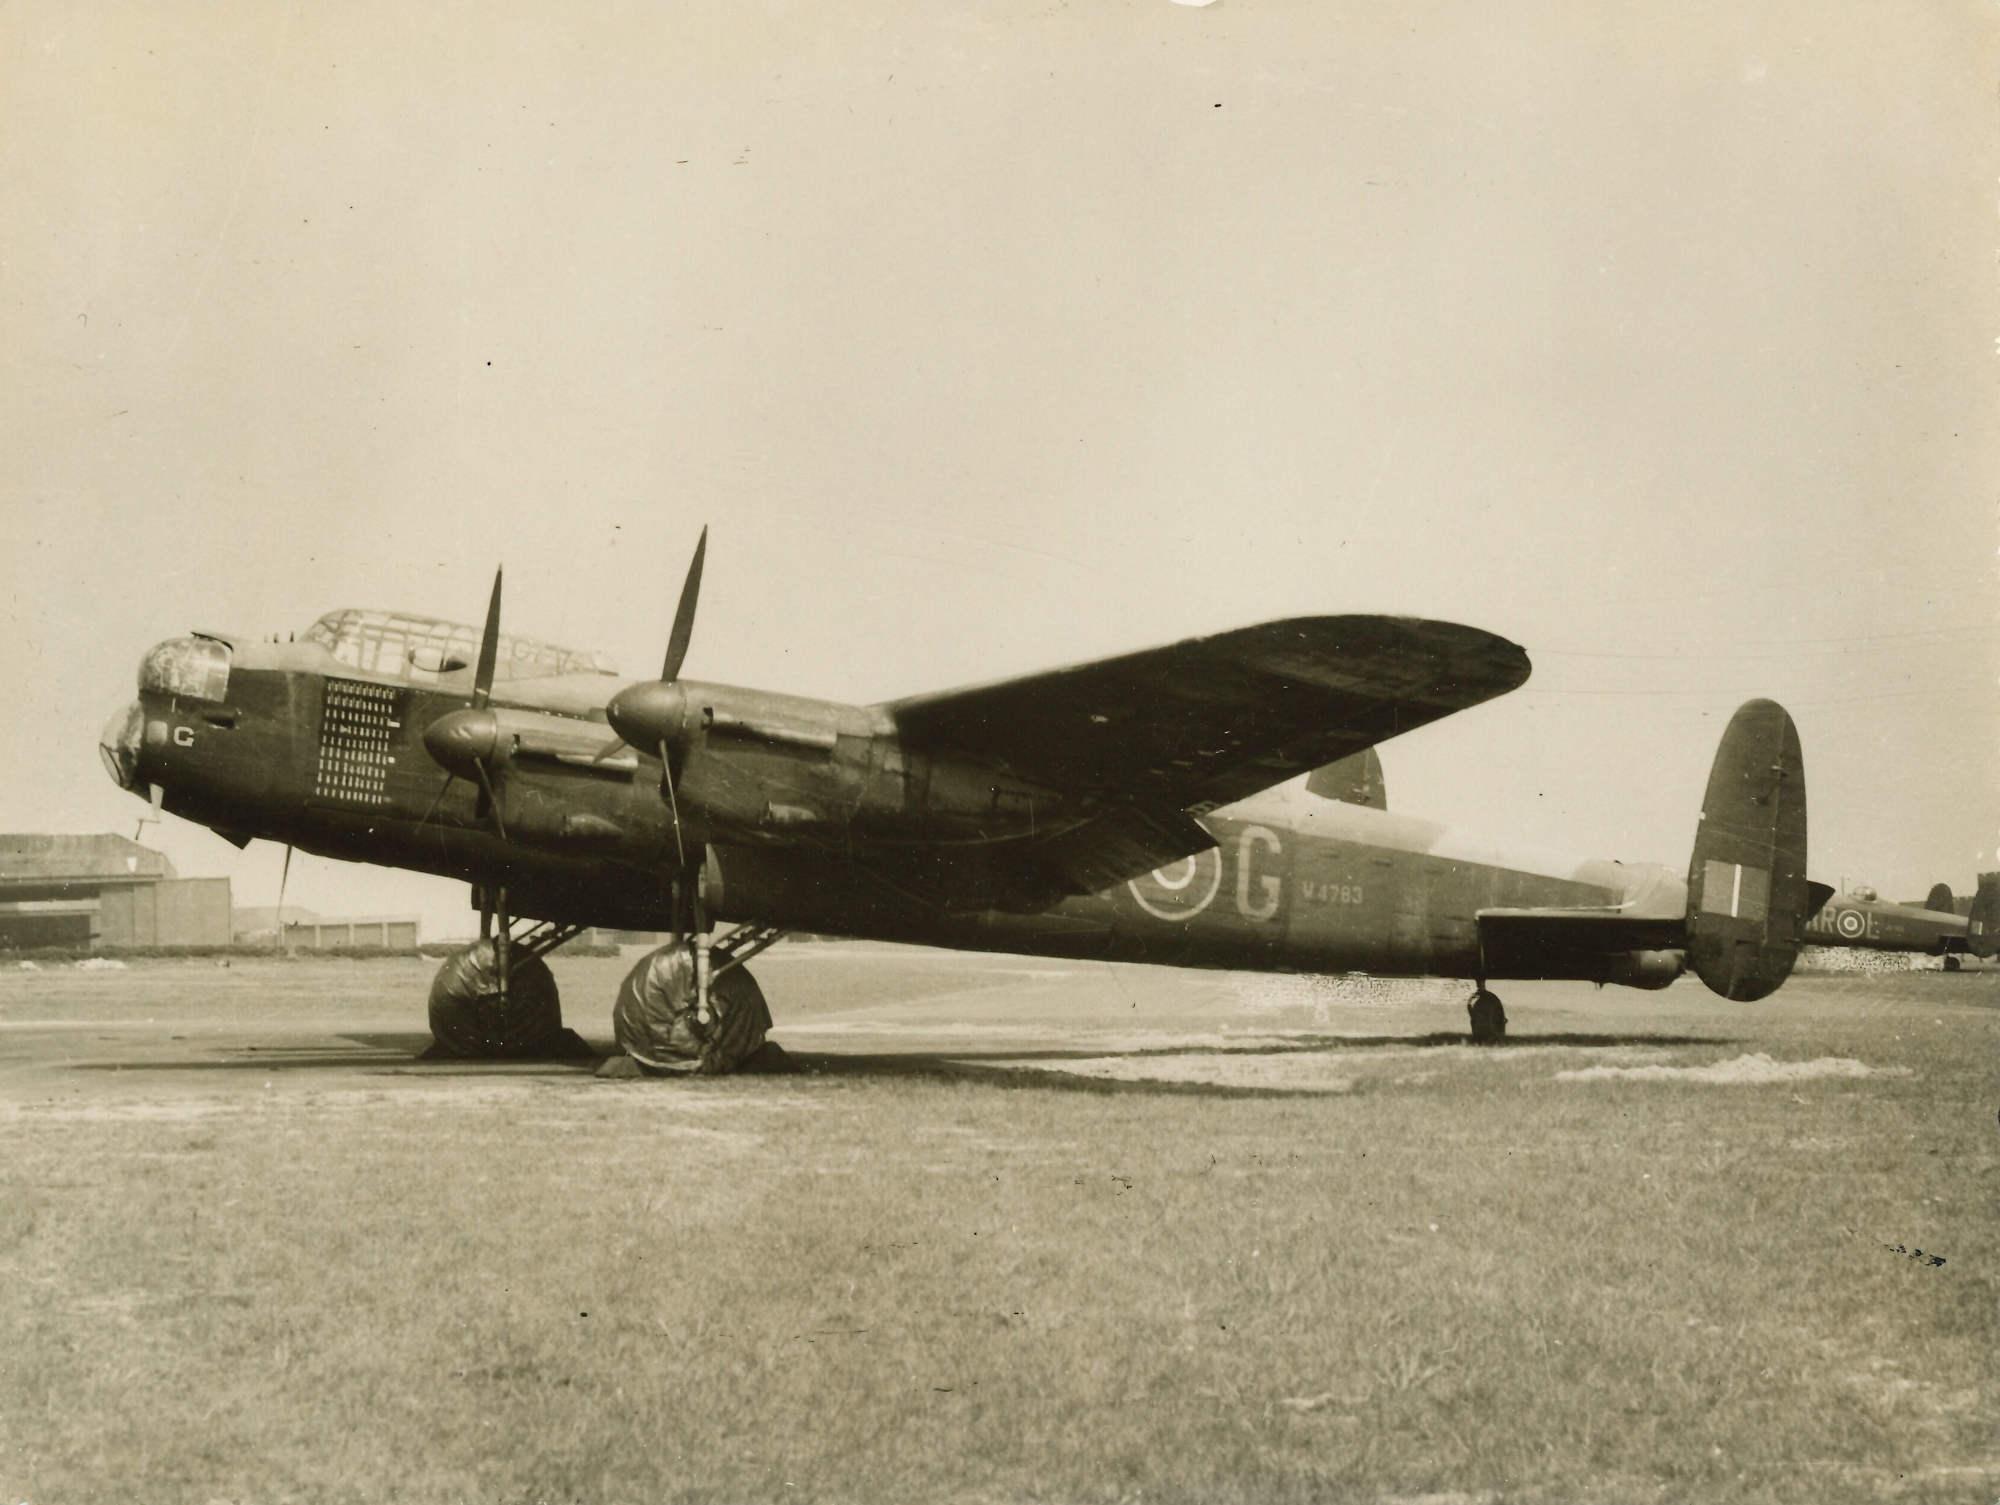 RAF WW2 Lancaster Bomber The Commemorative Coin Company 617 SQUADRON THE DAMBUSTERS Full Colour Silver Commemorative